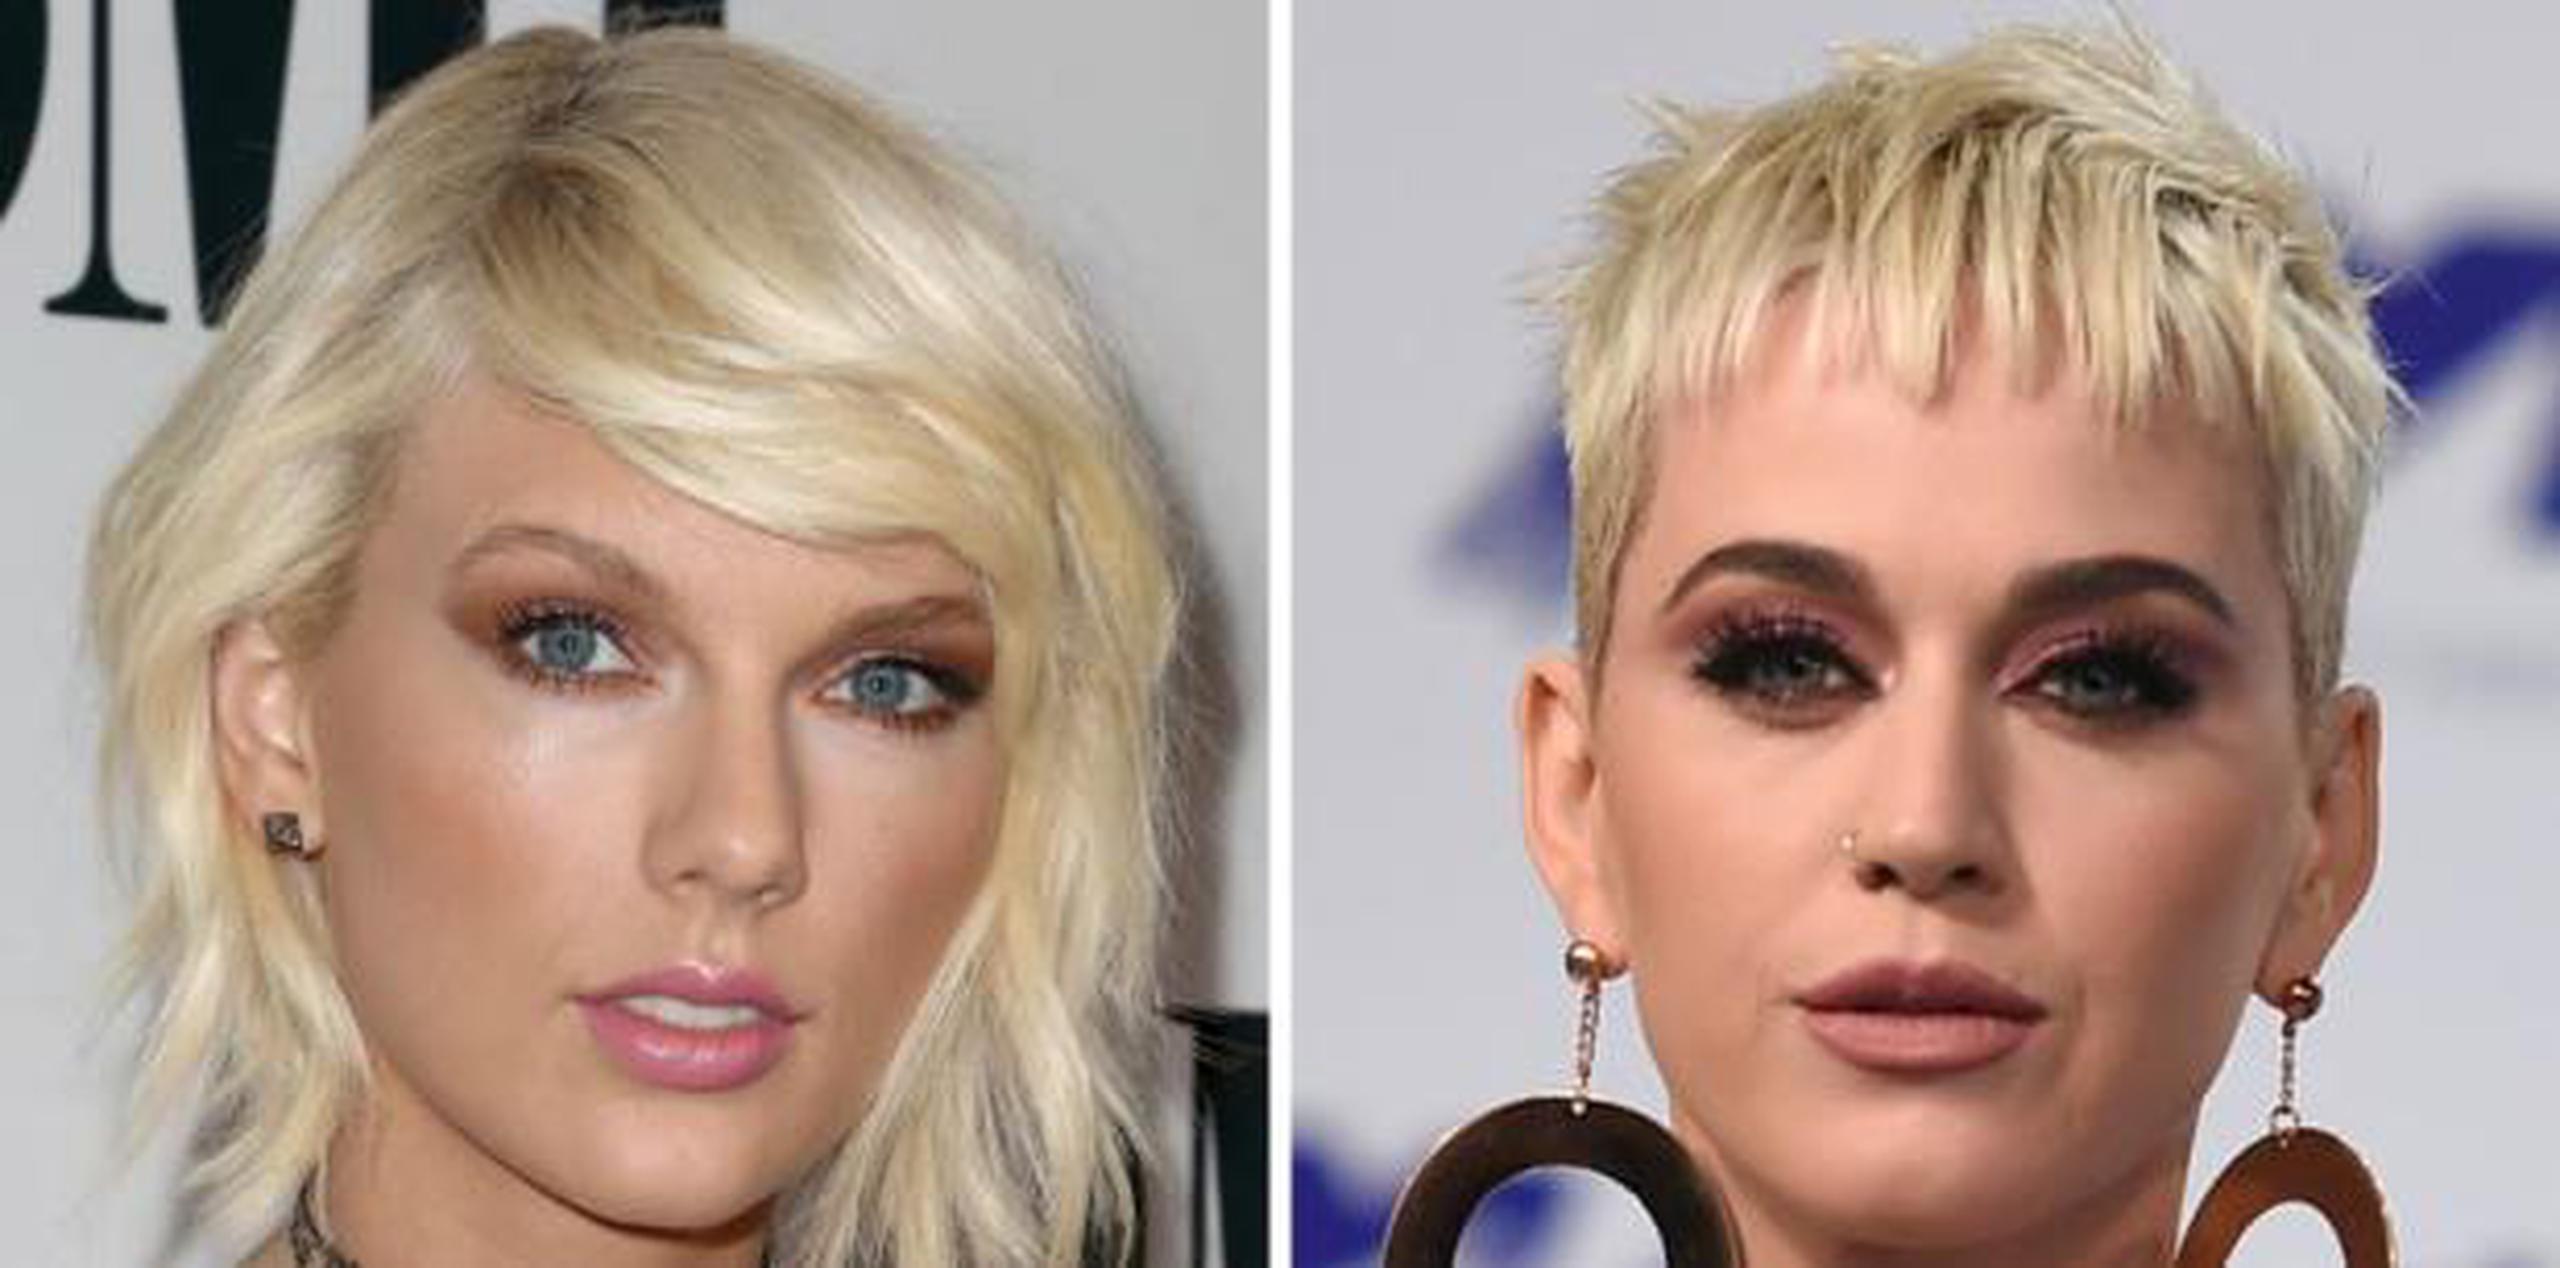 El pleito entre ambas estrellas comenzó en el 2014 luego que Swift dijo a Rolling Stone que otra cantante se había llevado a algunos de sus bailarines. (AP)